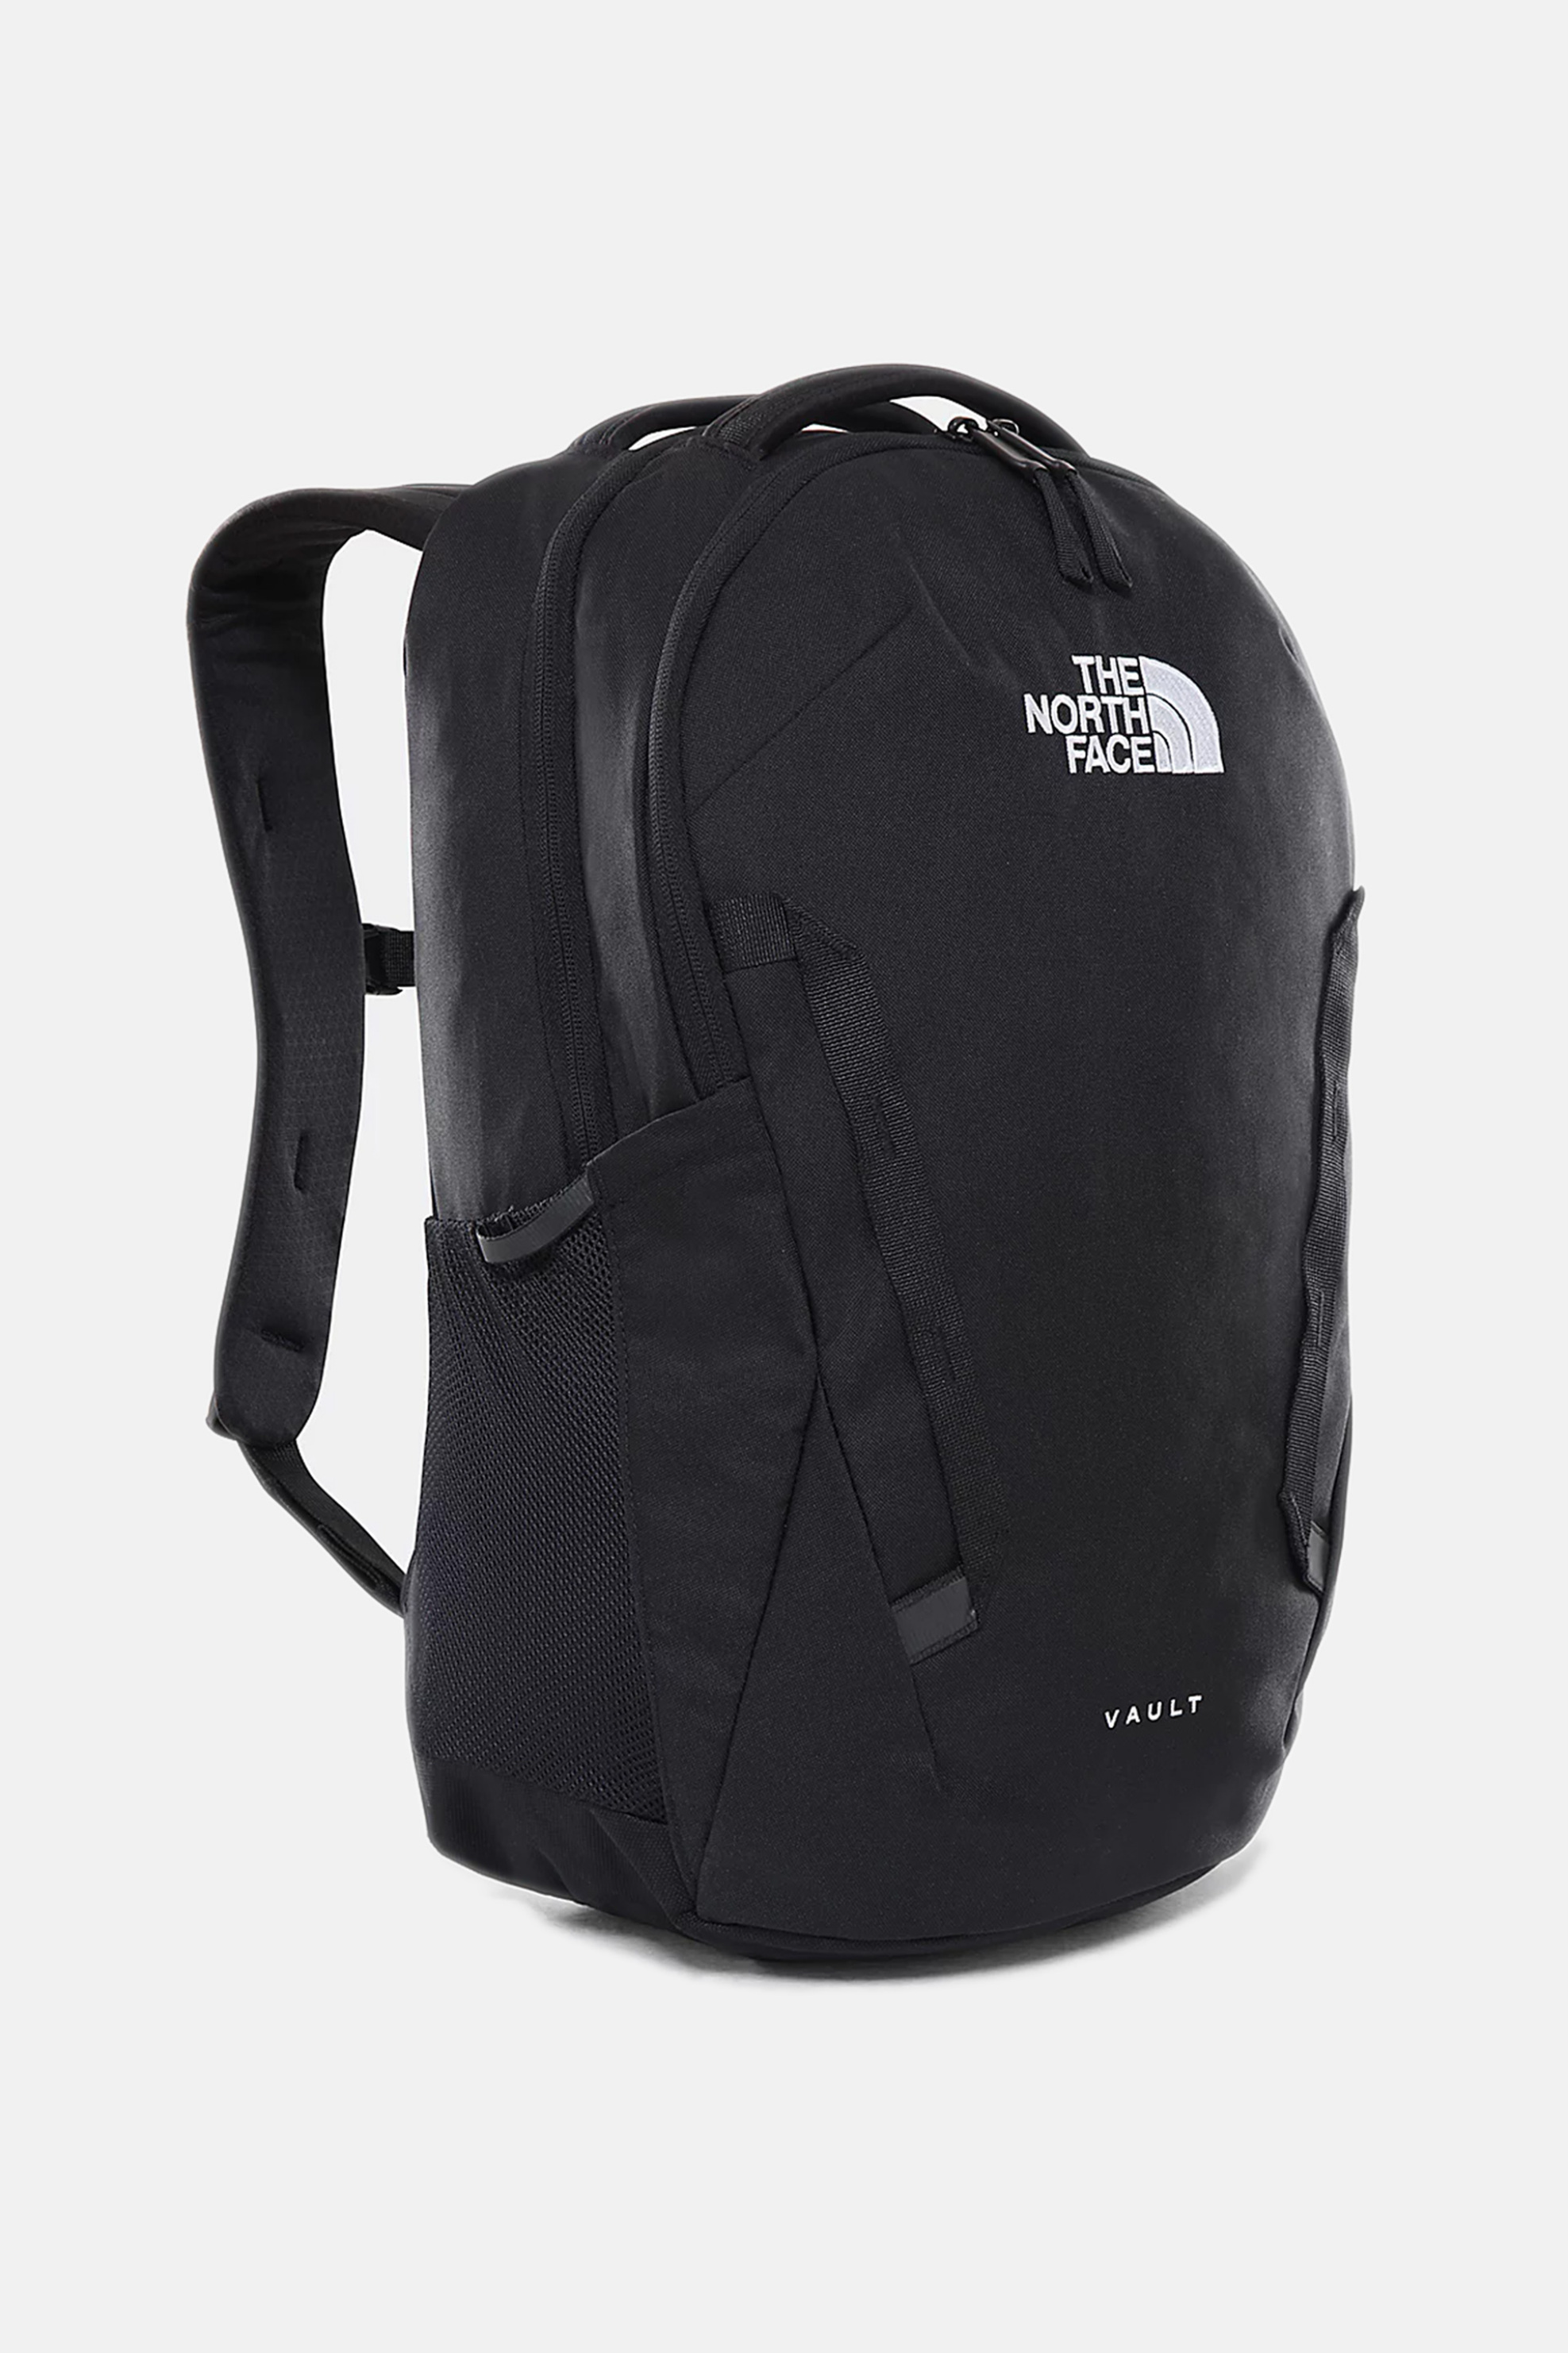 Ανδρική Μόδα > Ανδρικές Τσάντες > Ανδρικά Σακίδια & Backpacks The North Face unisex backpack ''Vault'' - NF0A3VY2JK31 Μαύρο